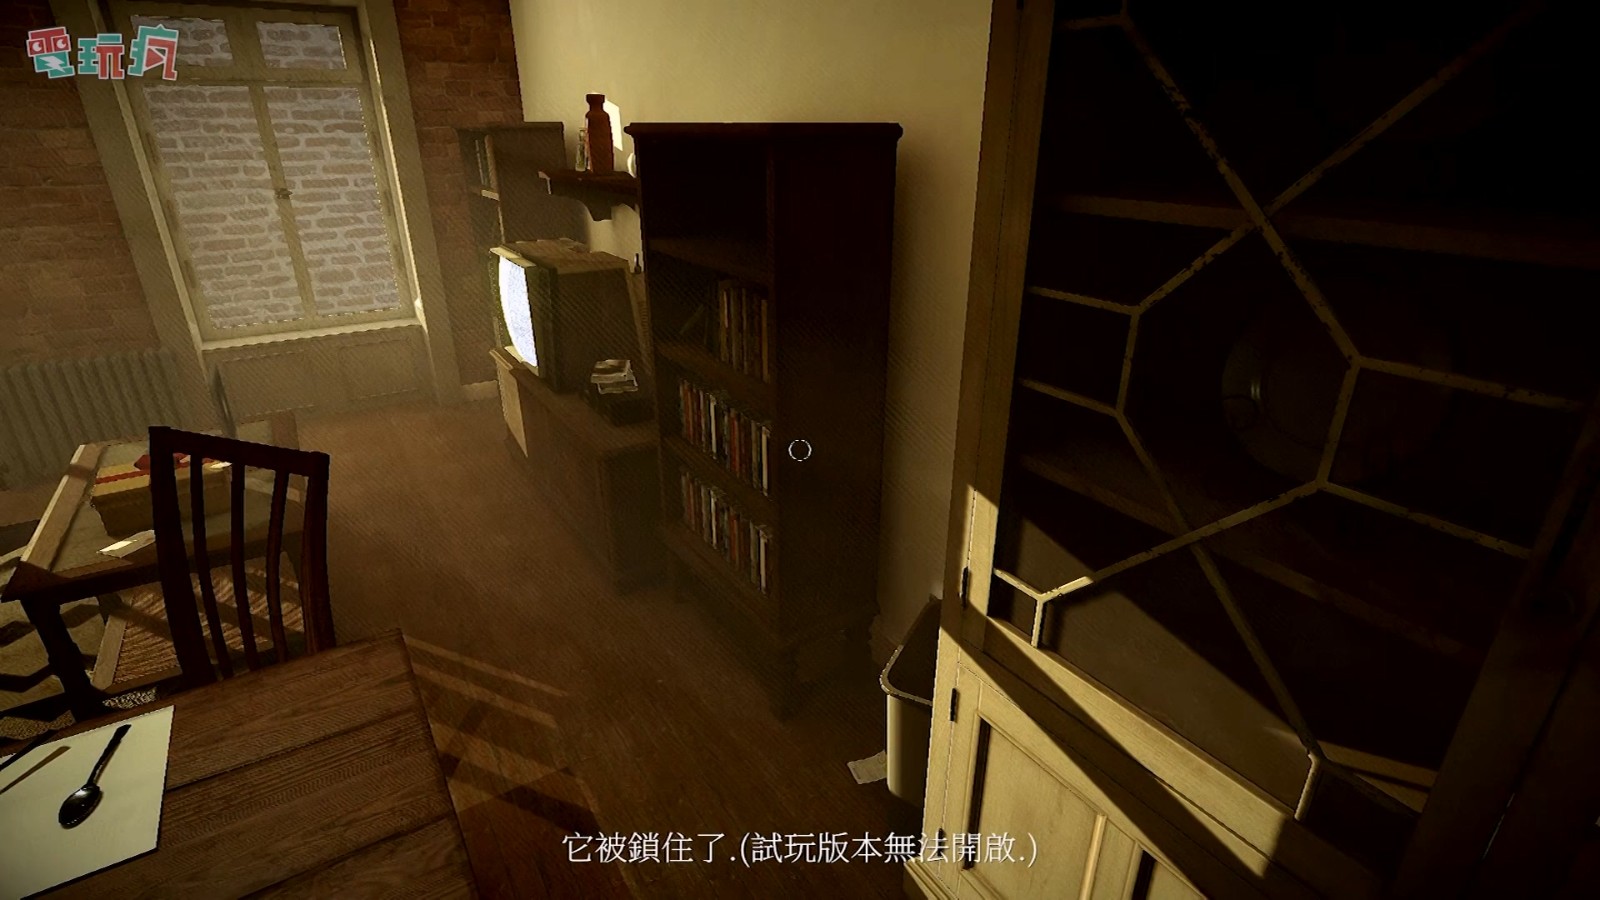 推理游戏《重返犯罪现场》中文版实机视频 二次世界 第12张